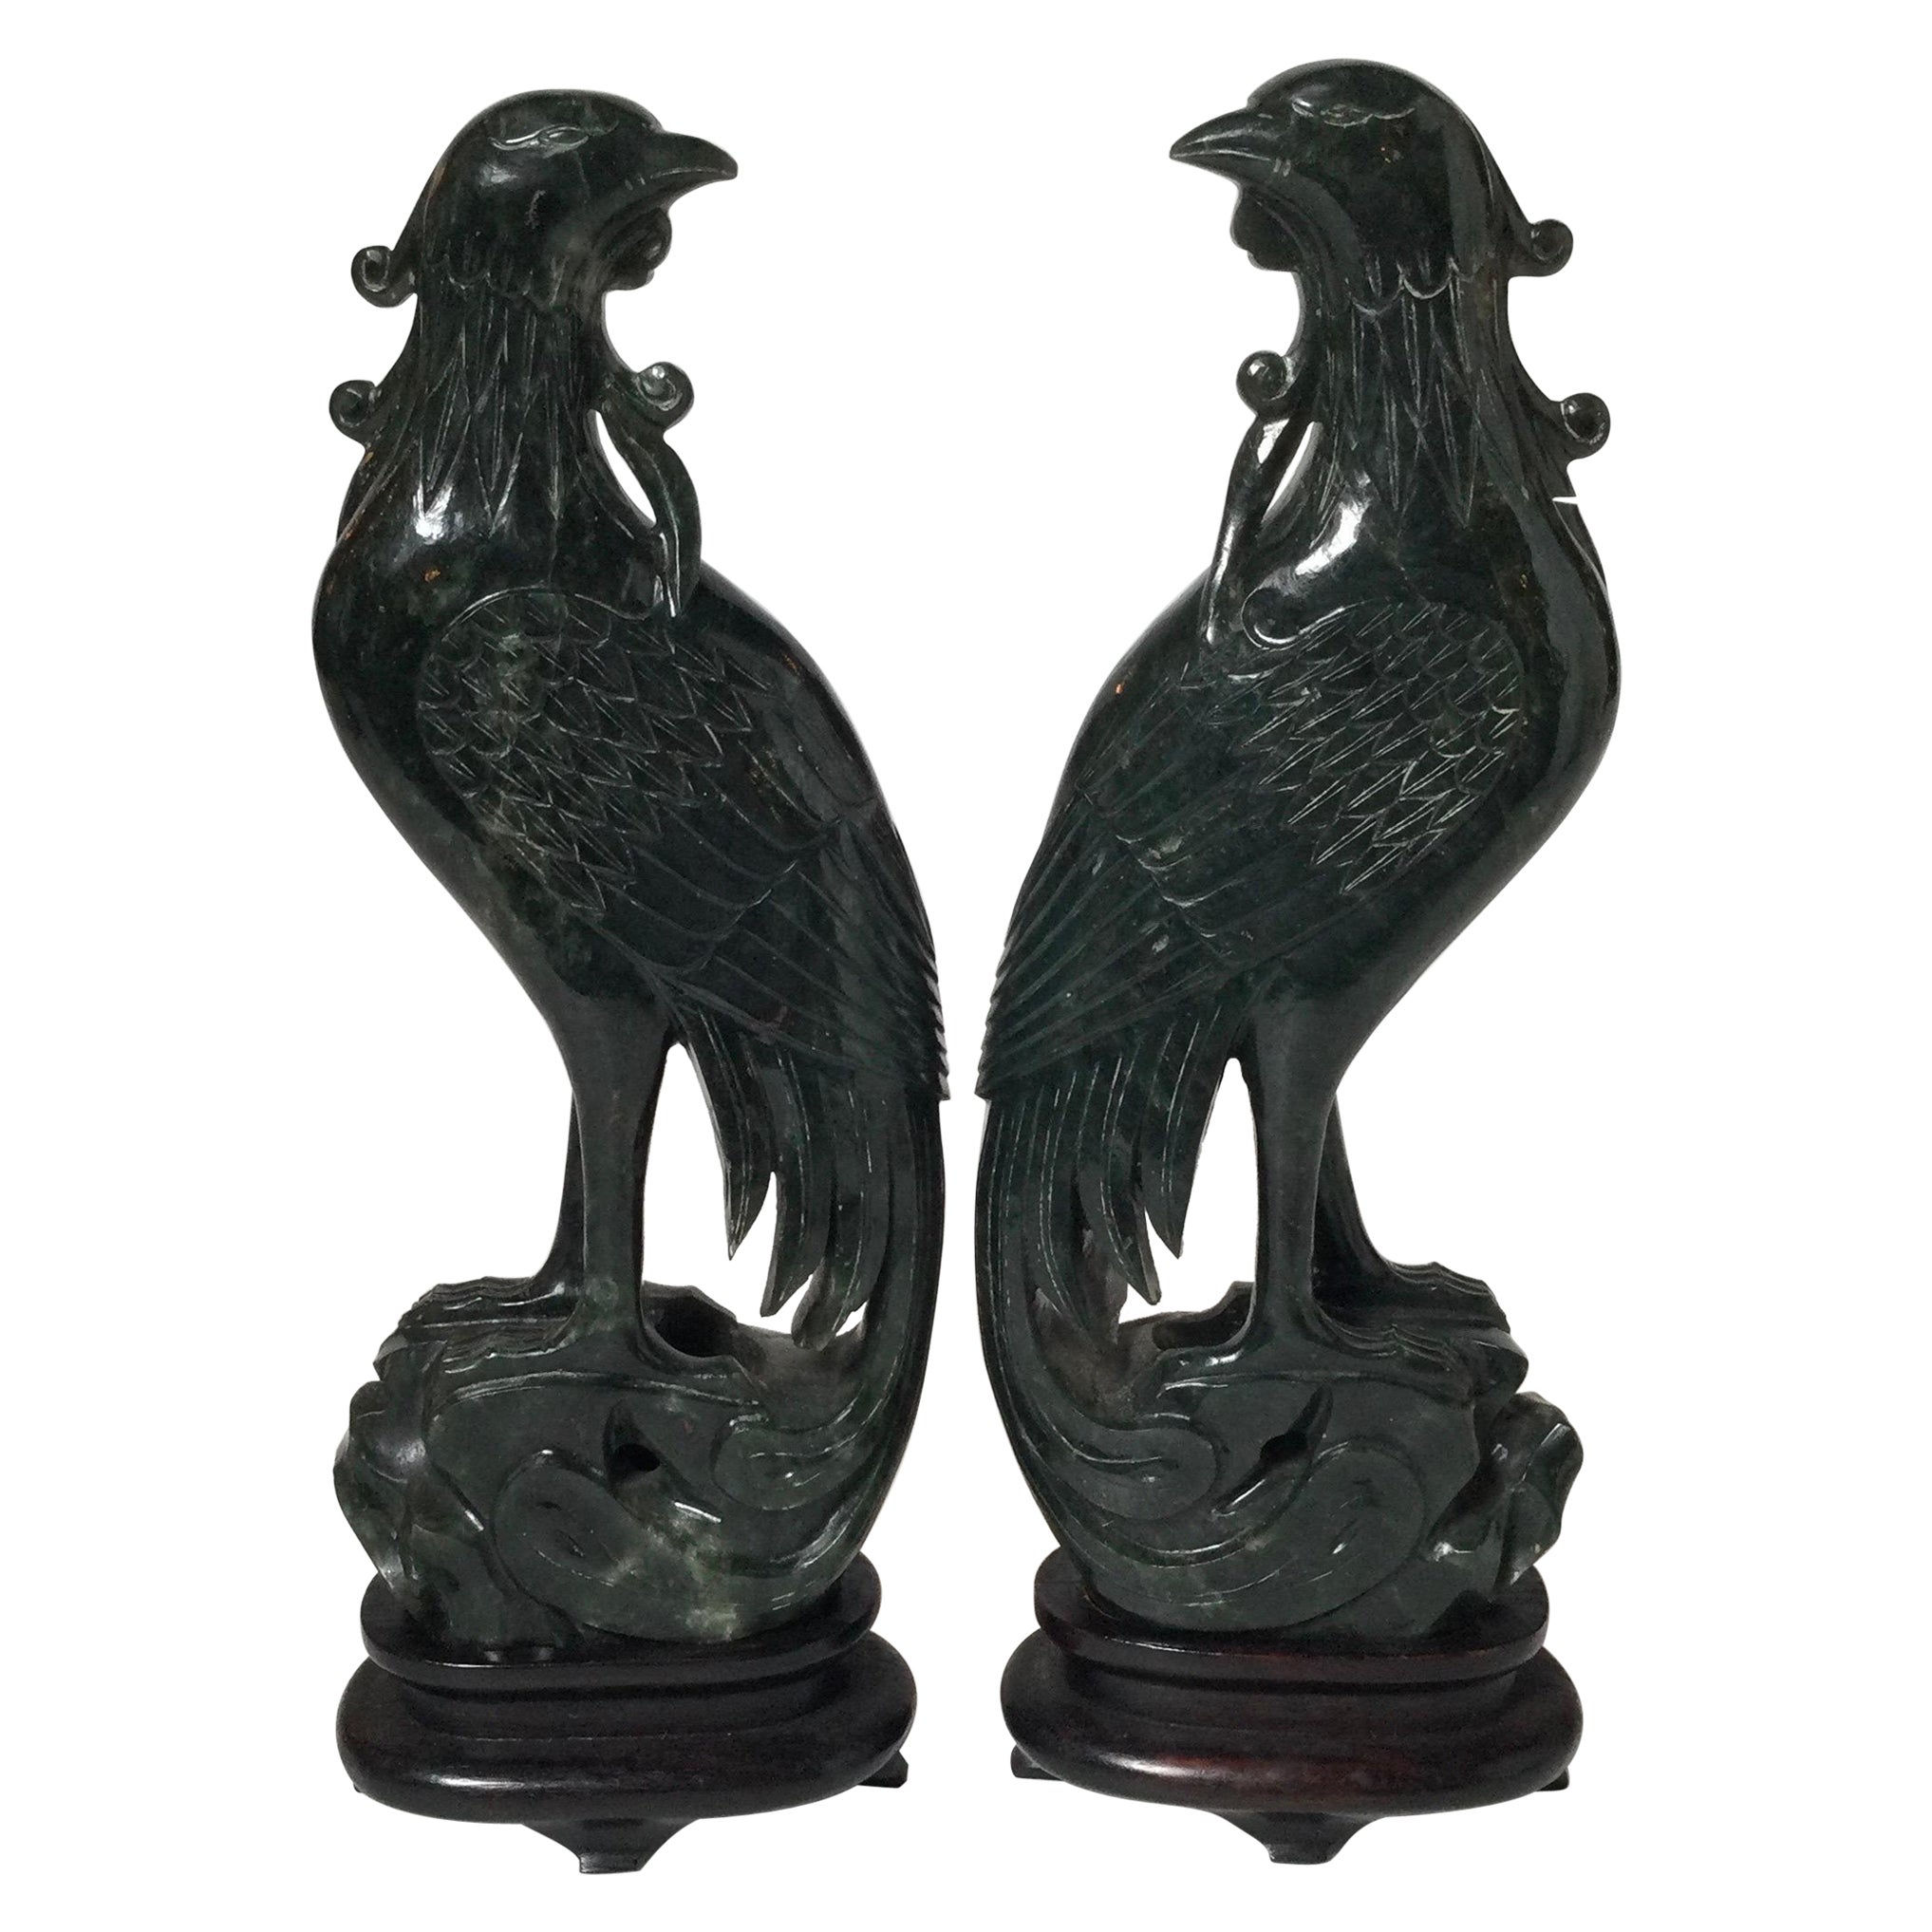 Paire de figurines d'oiseaux phénix en jade épinard sculptées à la main avec supports en bois